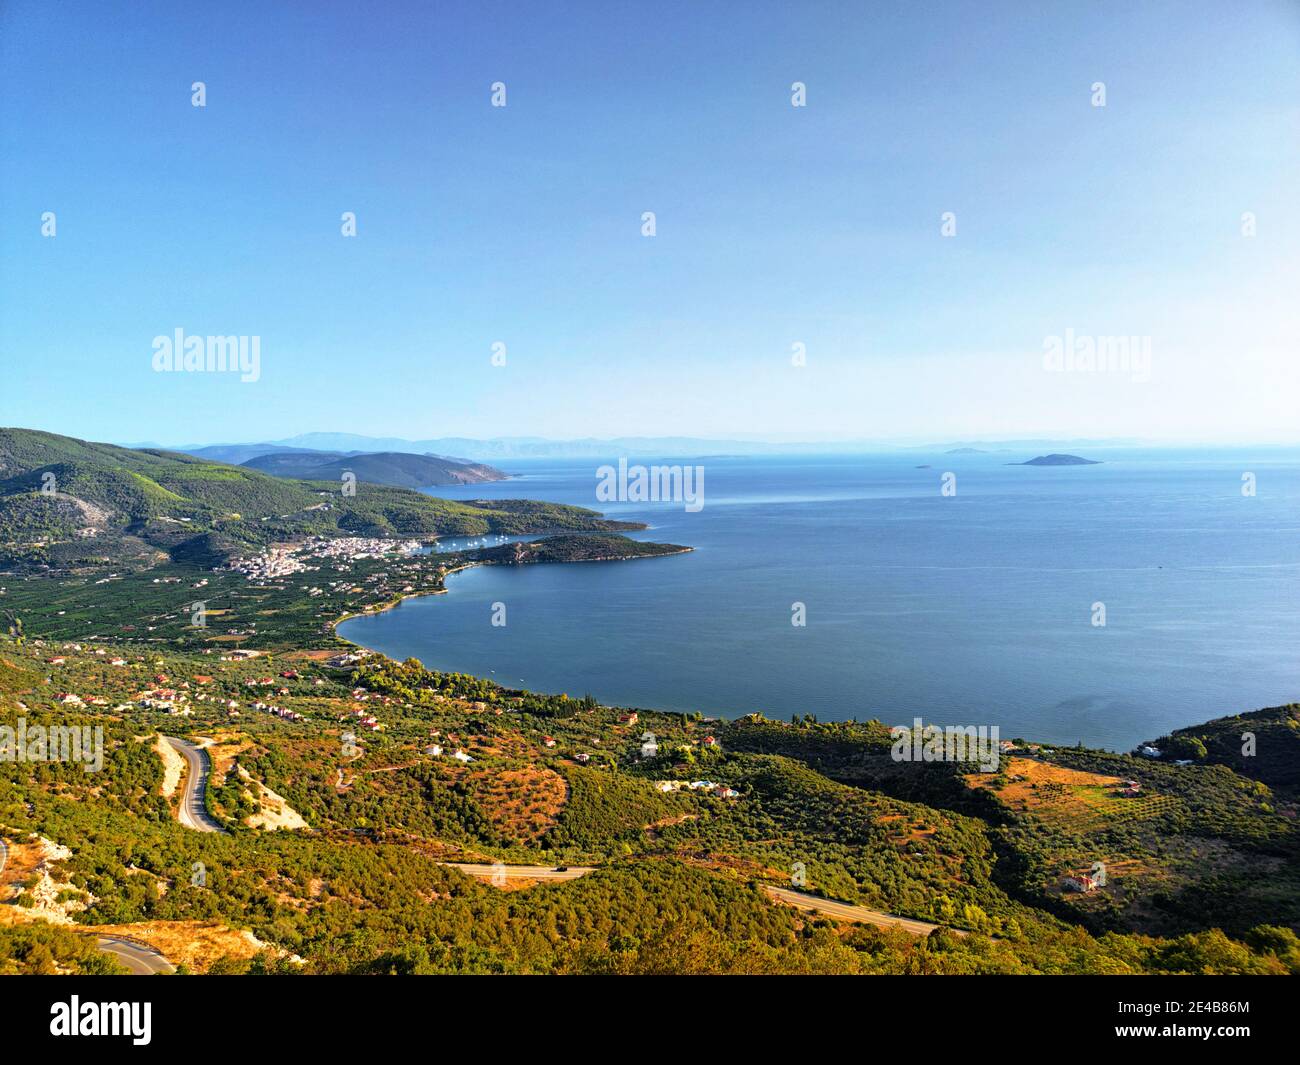 Blick auf bewaldete Hügel und die weite Bucht von Epidauros, Argolis, Peloponnes, Griechenland Stock Photo